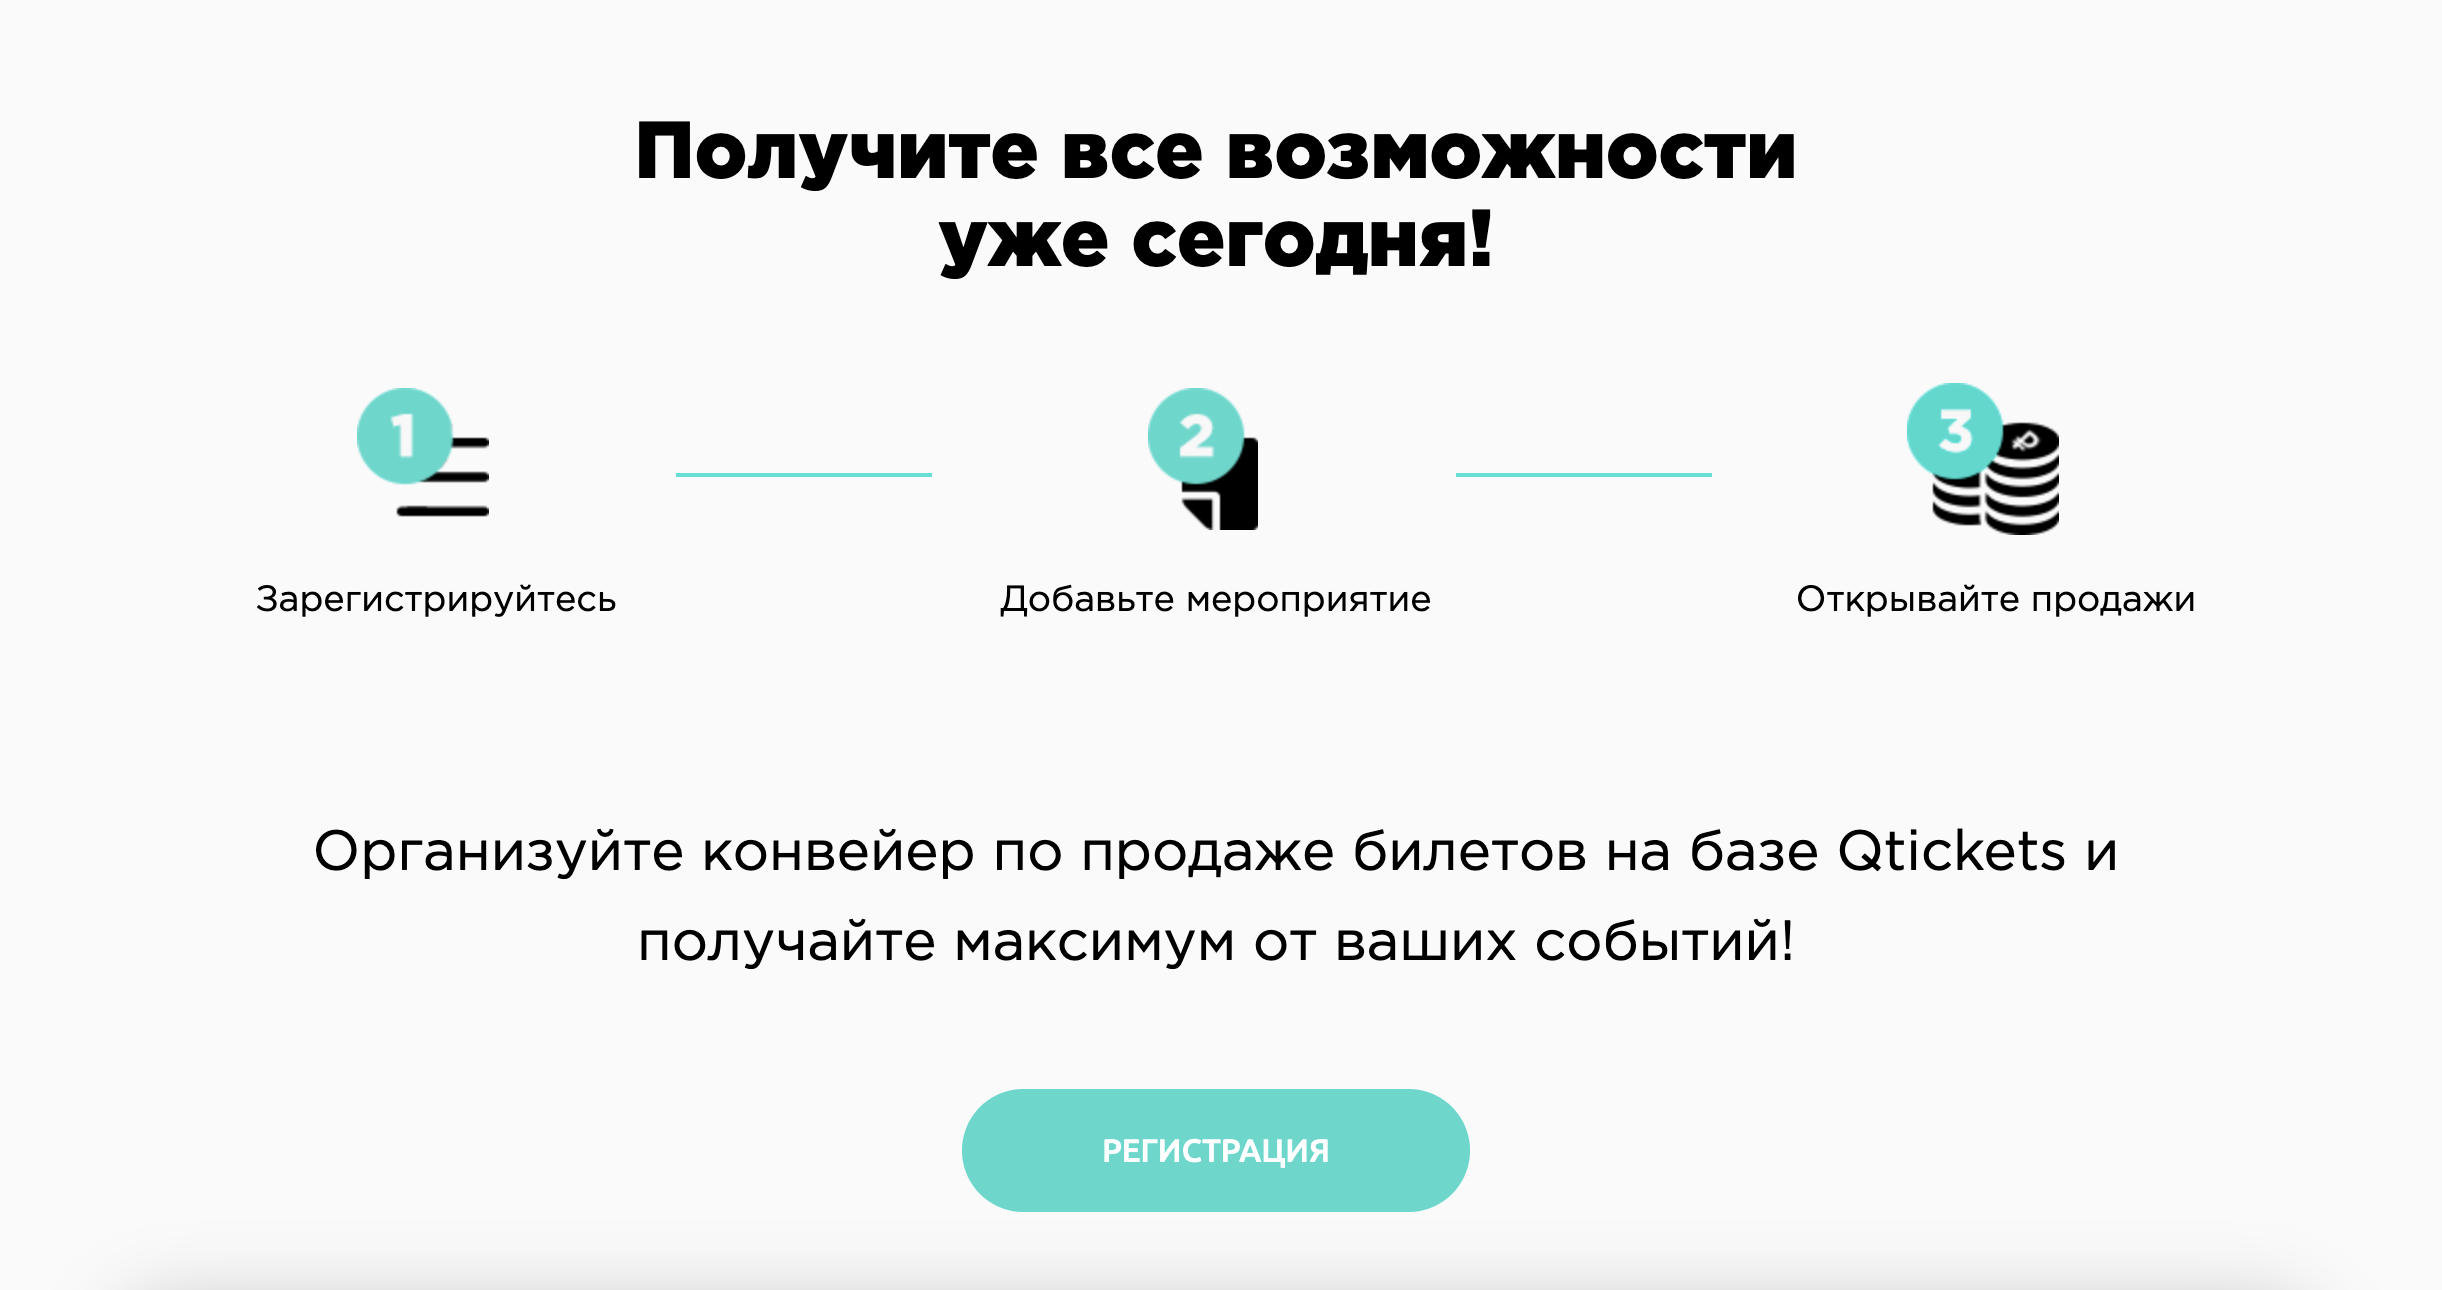 Регистрация в три шага Qtickets.ru